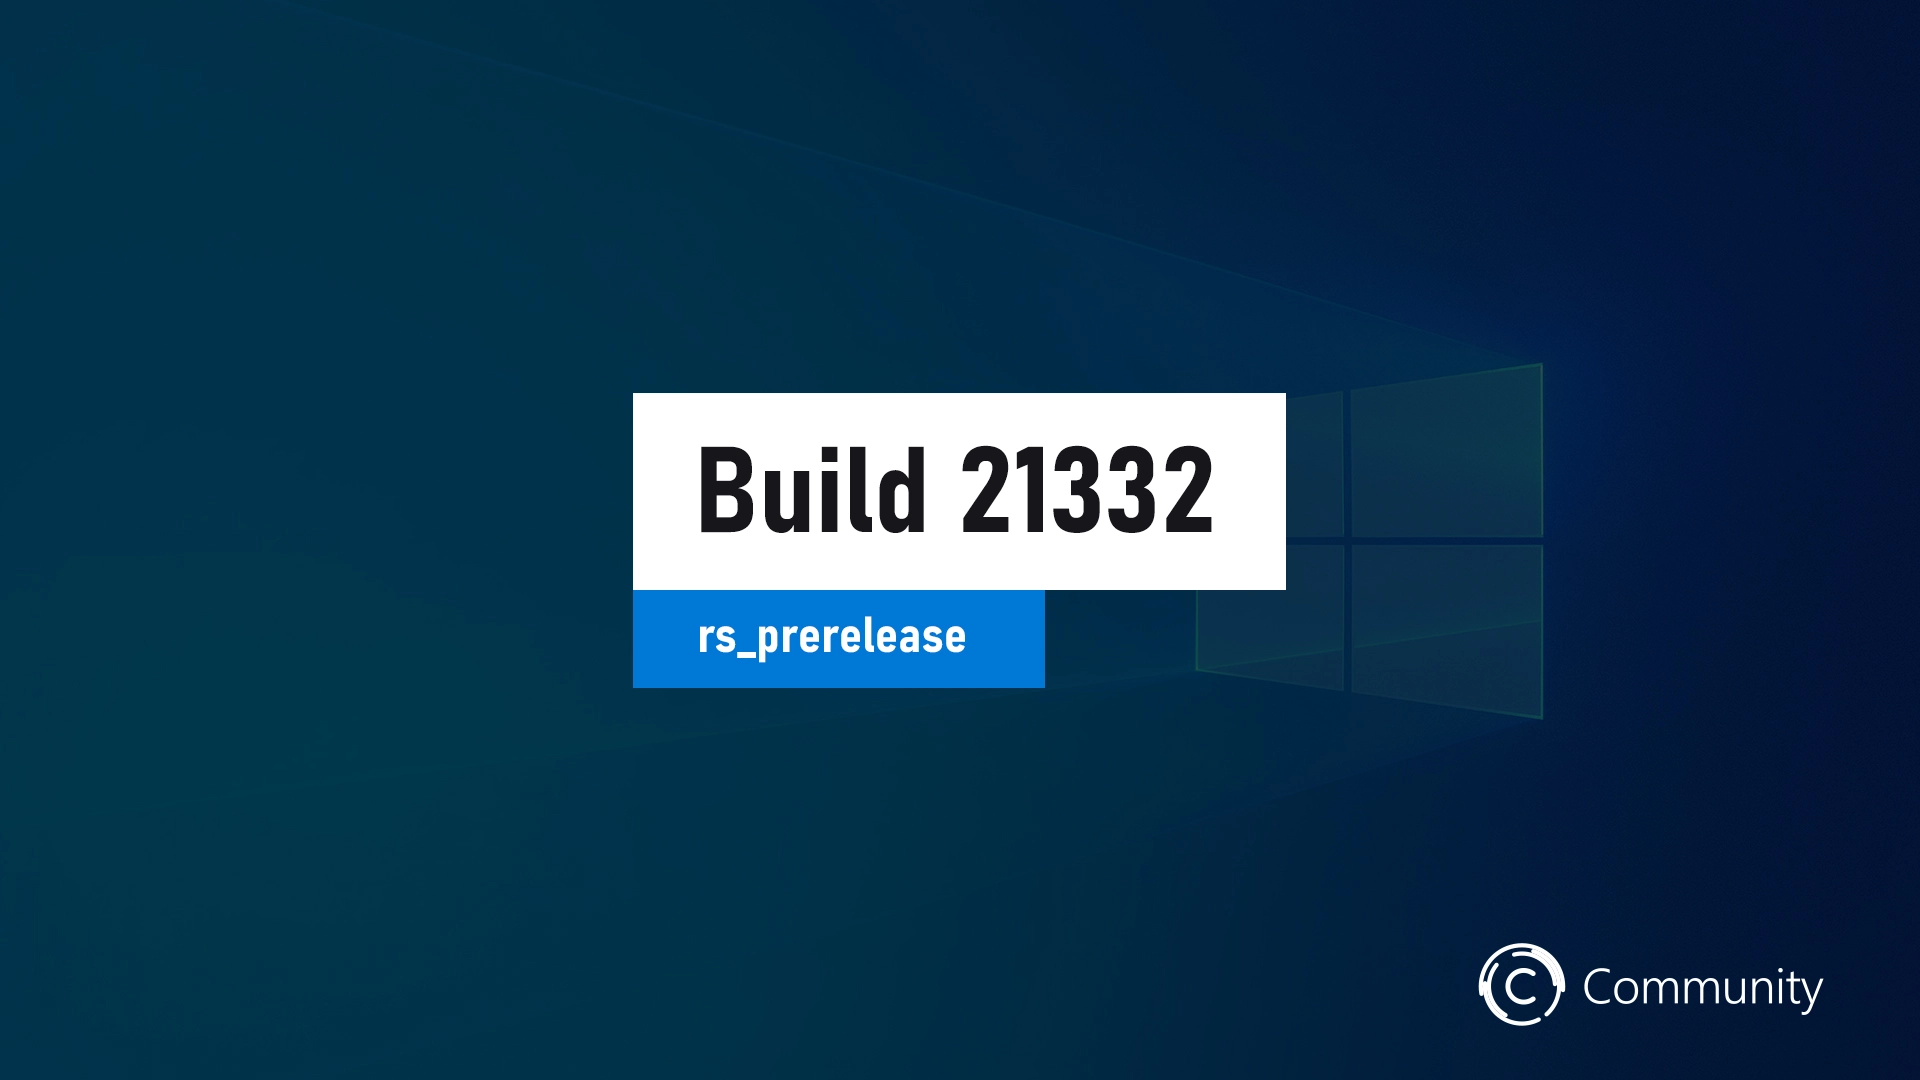 La mise à jour 21332.1010 de Windows 10 (KB5001478) est disponible